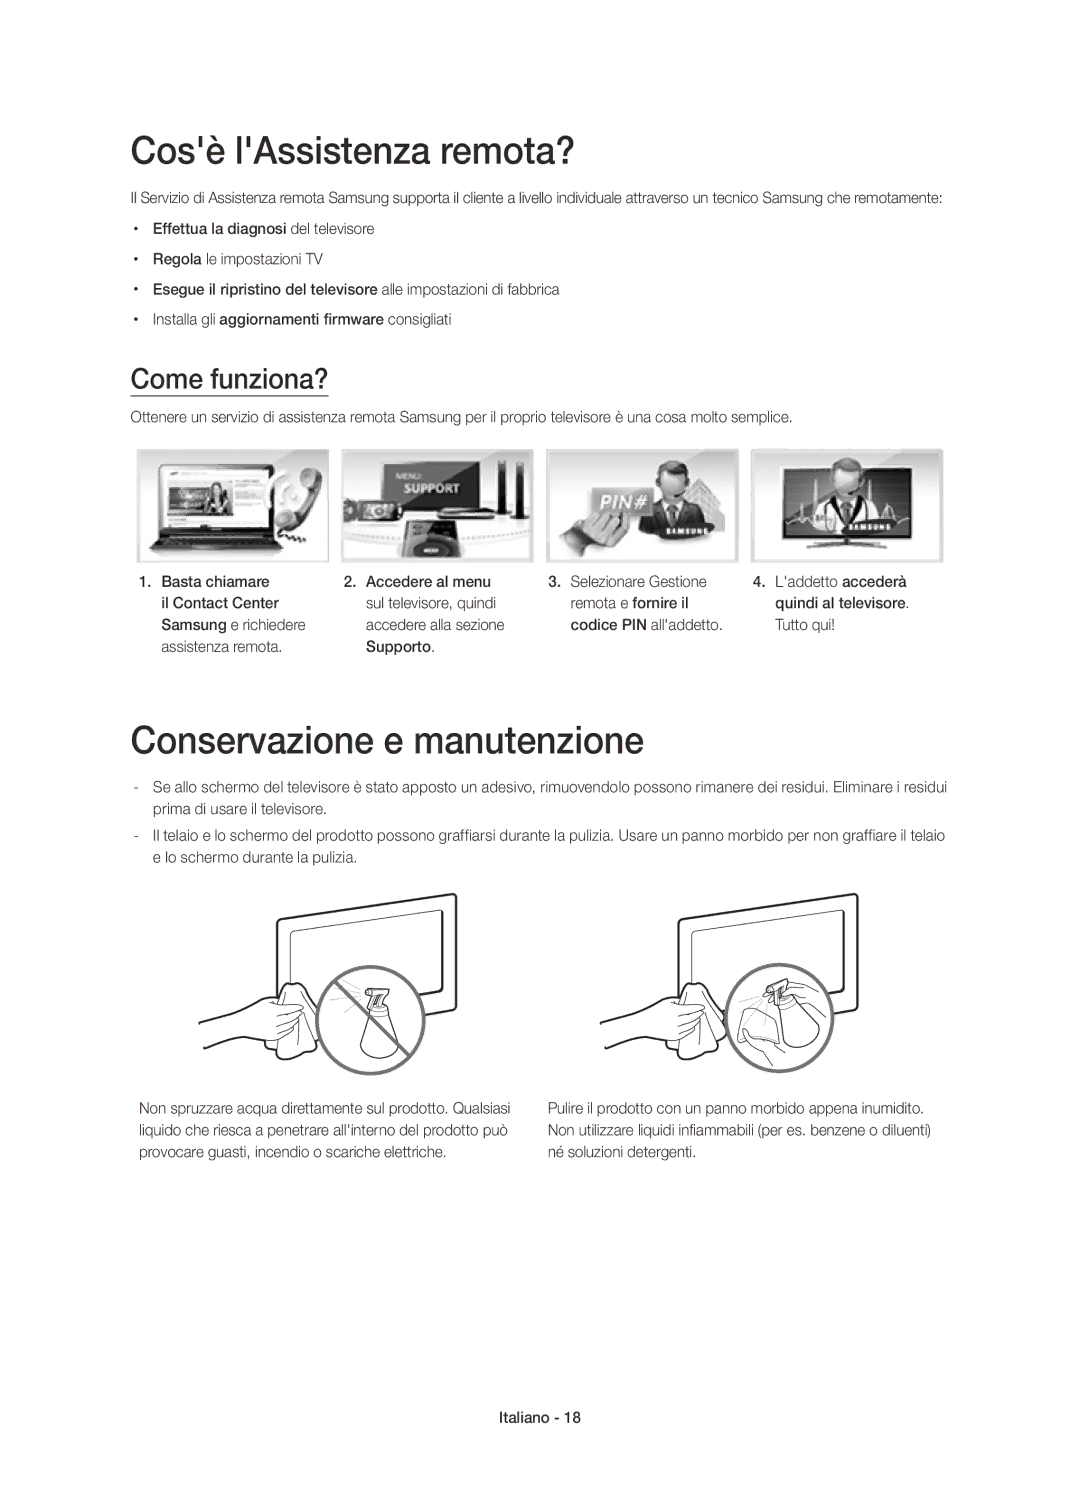 Samsung UE22H5670SSXZG manual Cosè lAssistenza remota?, Conservazione e manutenzione, Come funziona?, Samsung e richiedere 